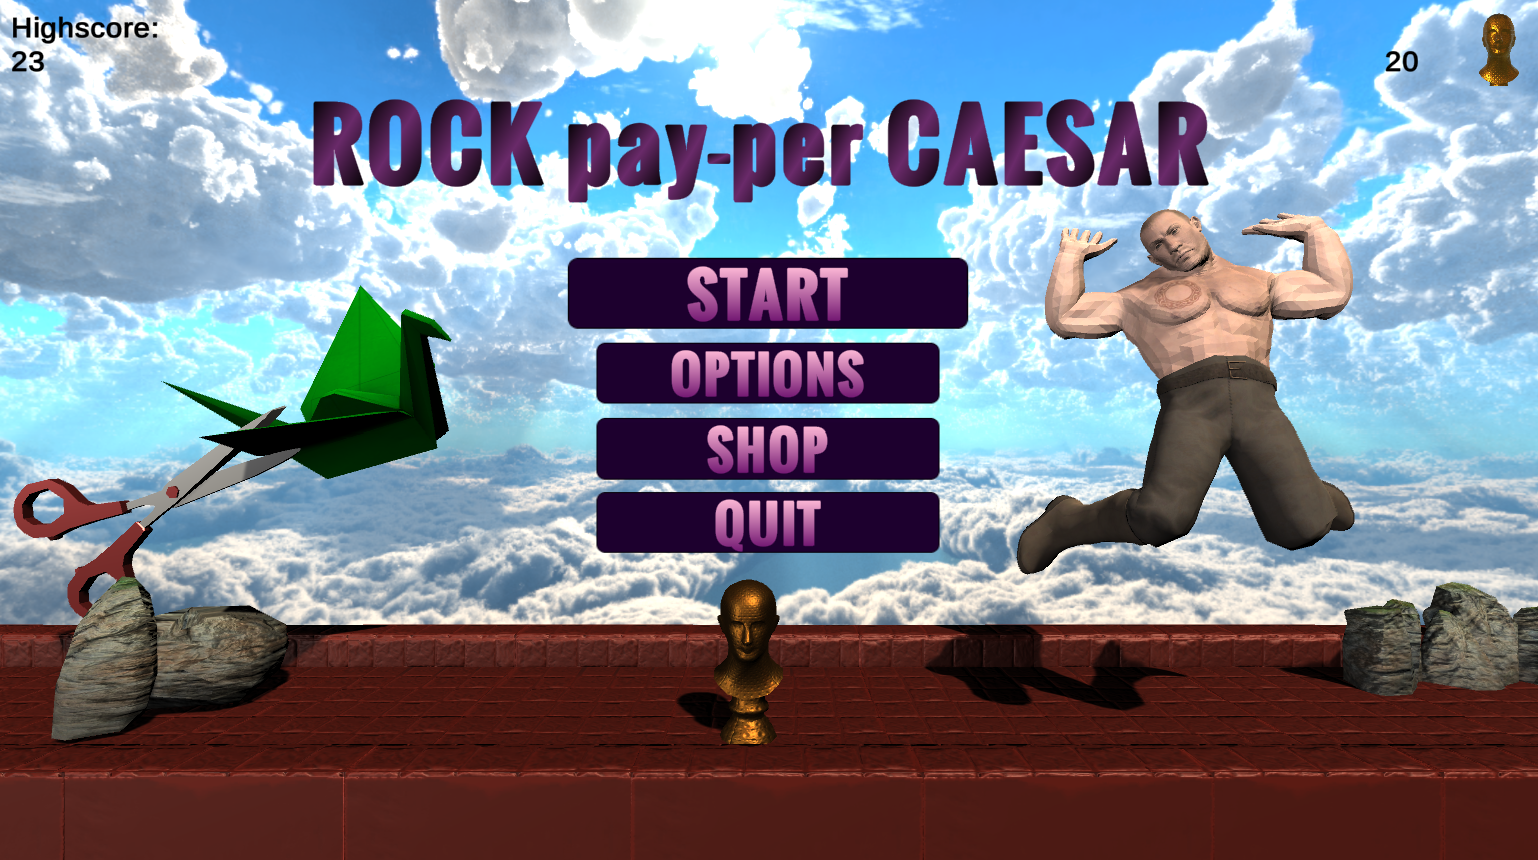 Rock pay-per Caesar